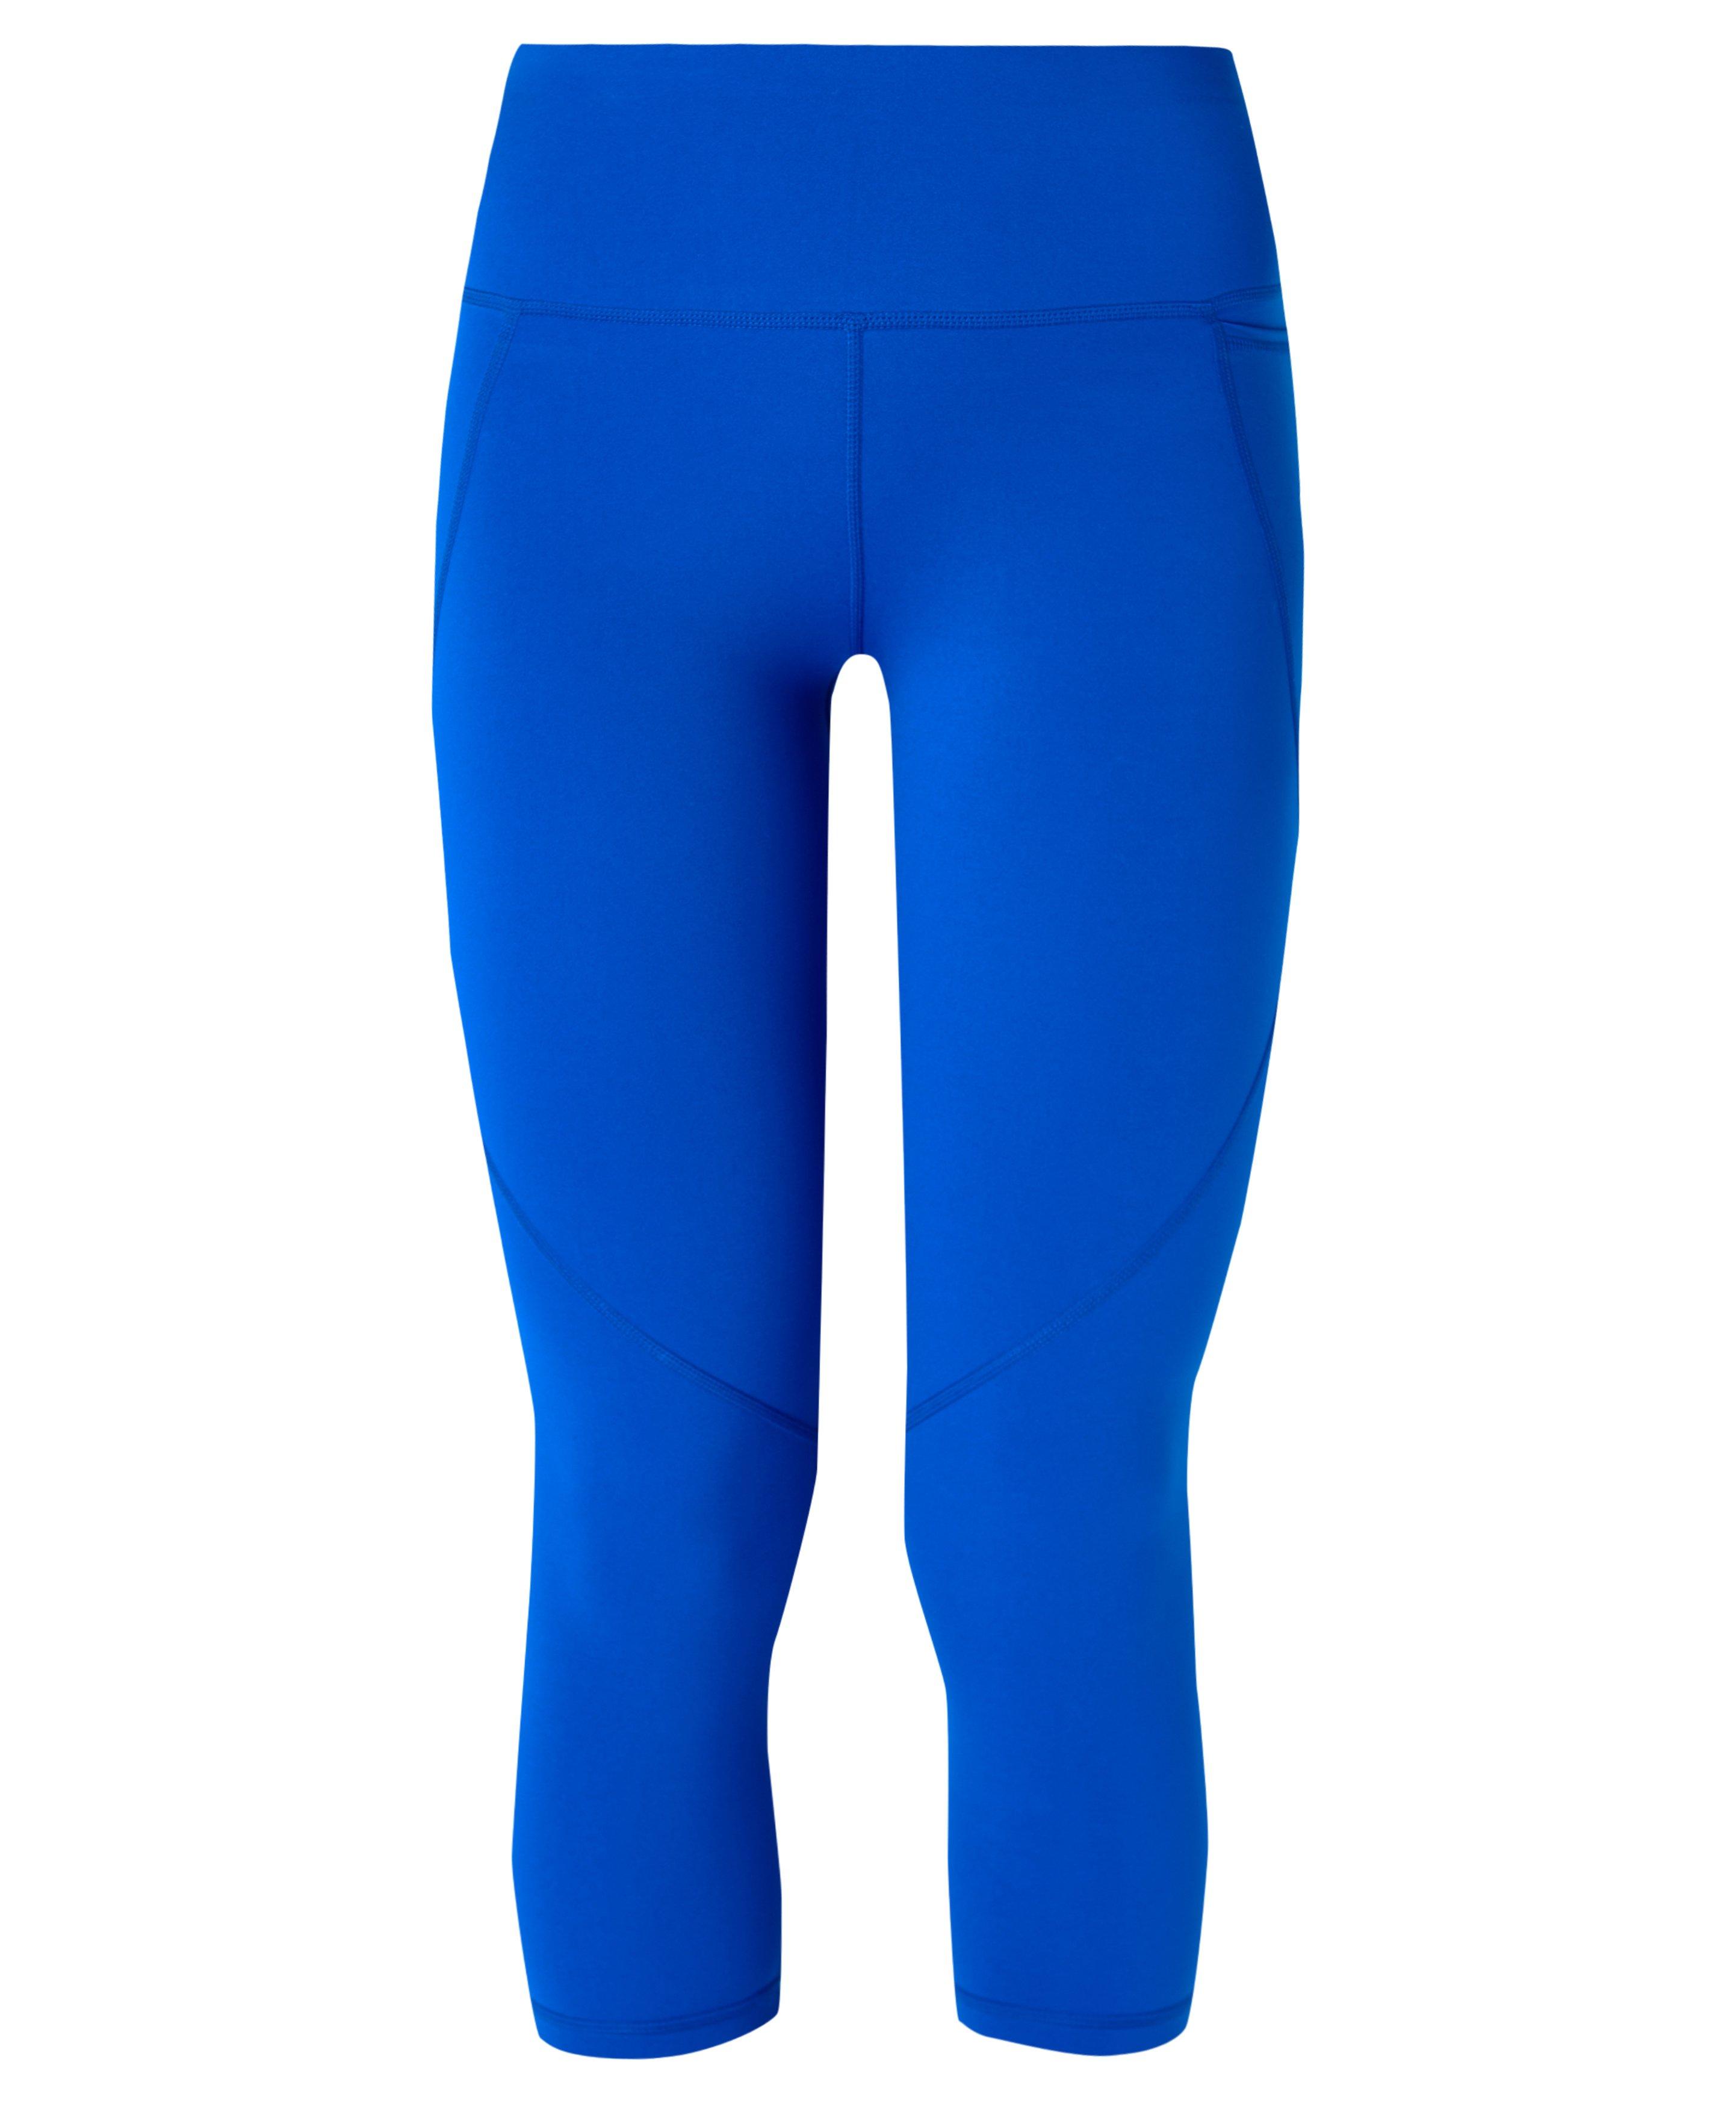 Capri Leggings from CRZ YOGA for Women in Blue